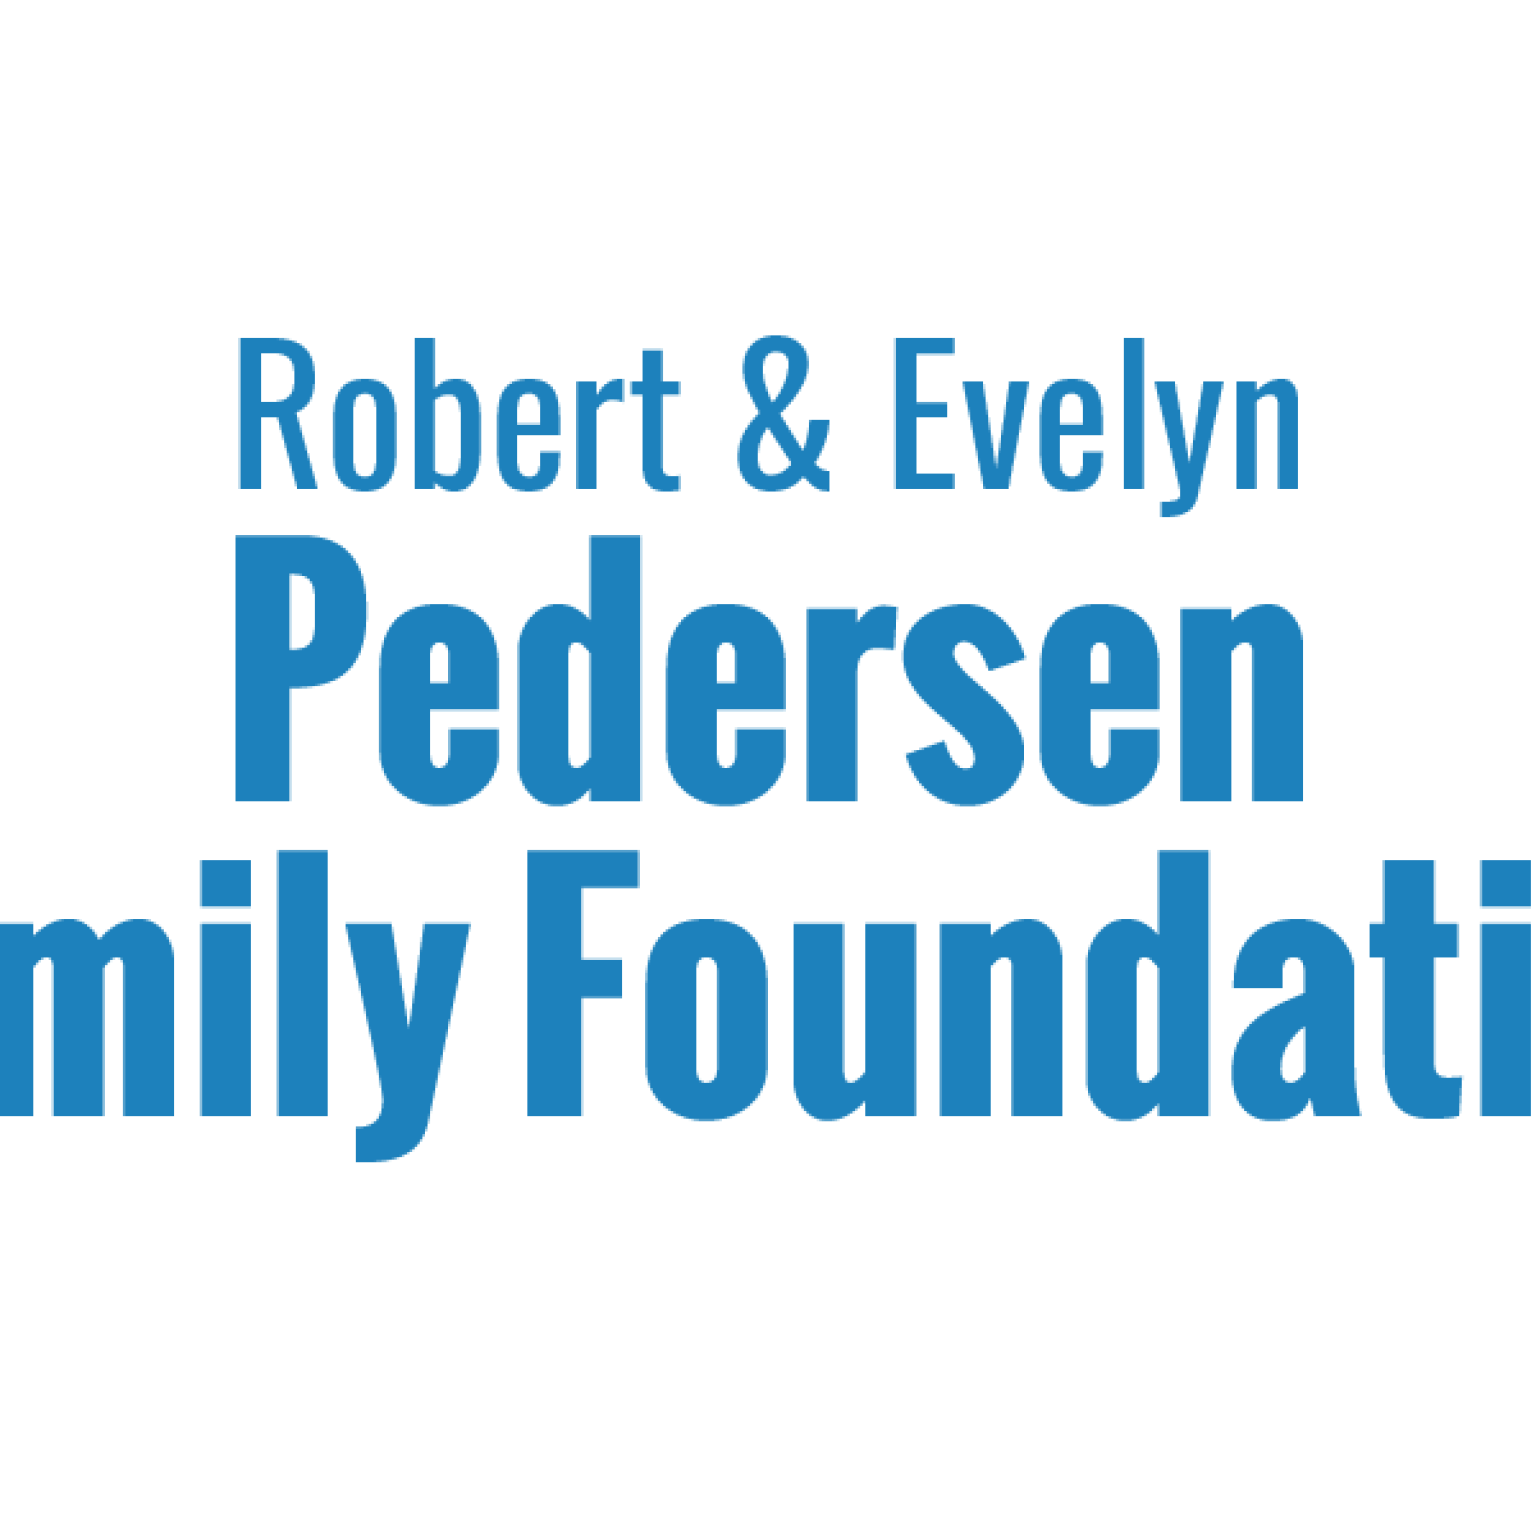 Robert & Evelyn Pedersen Family Foundation